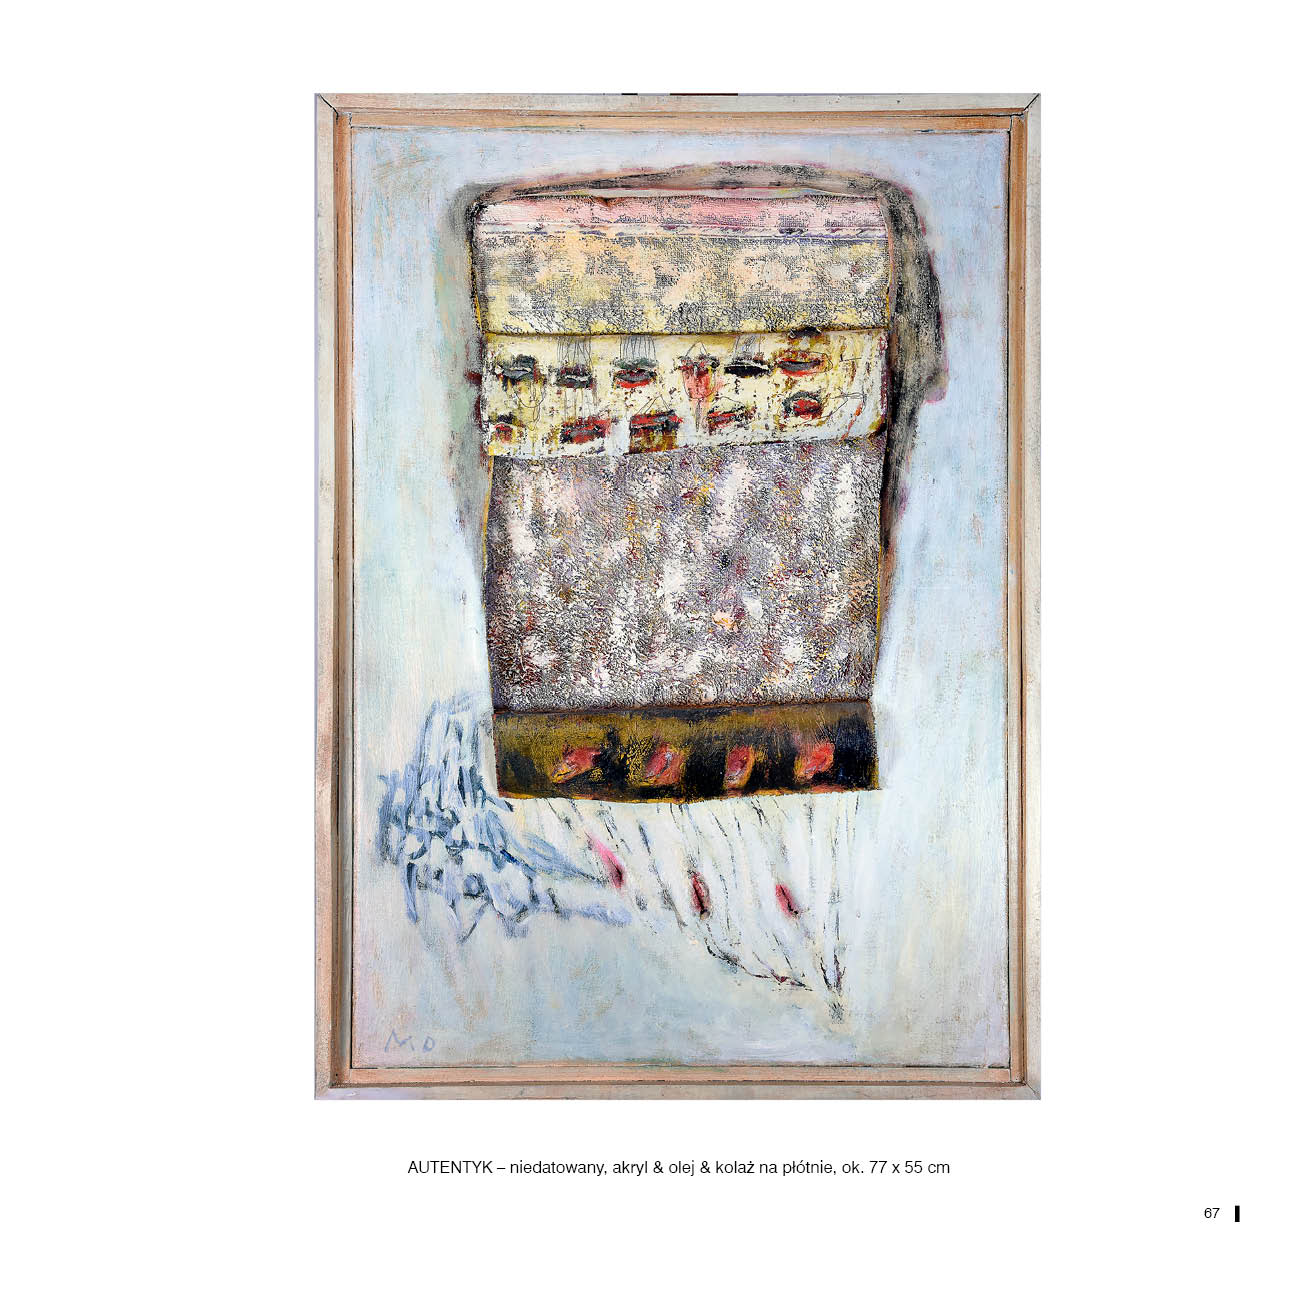 AUTENTYK – niedatowany, akryl & olej & kolaż na płótnie, ok. 77 x 55 cm